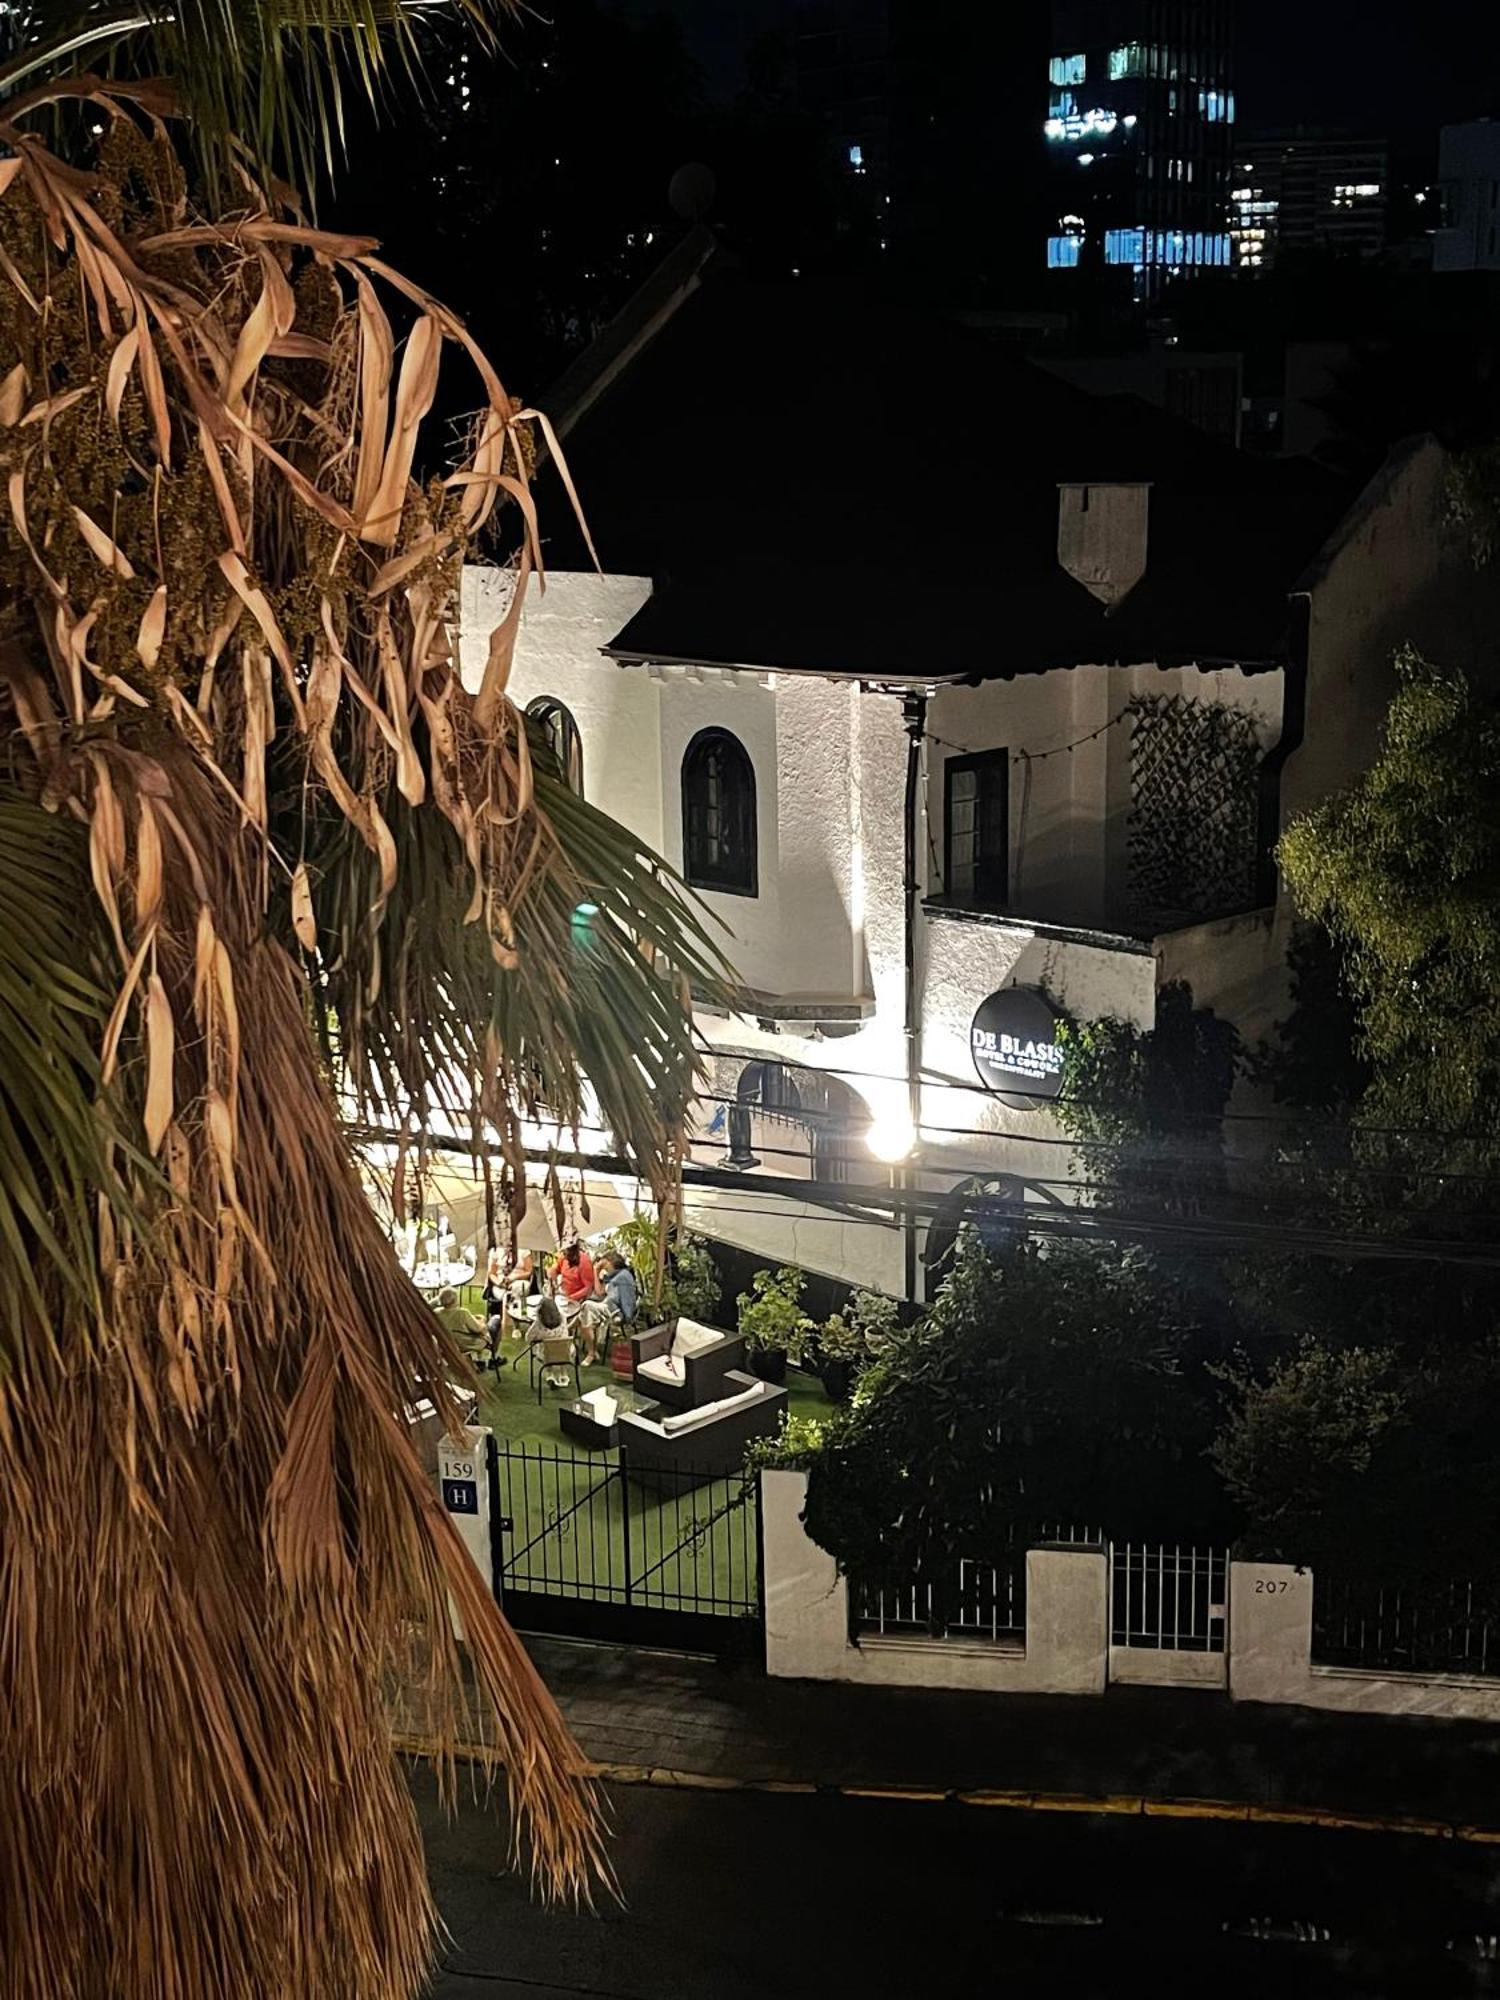 Hotel De Blasis Σαντιάγκο Εξωτερικό φωτογραφία